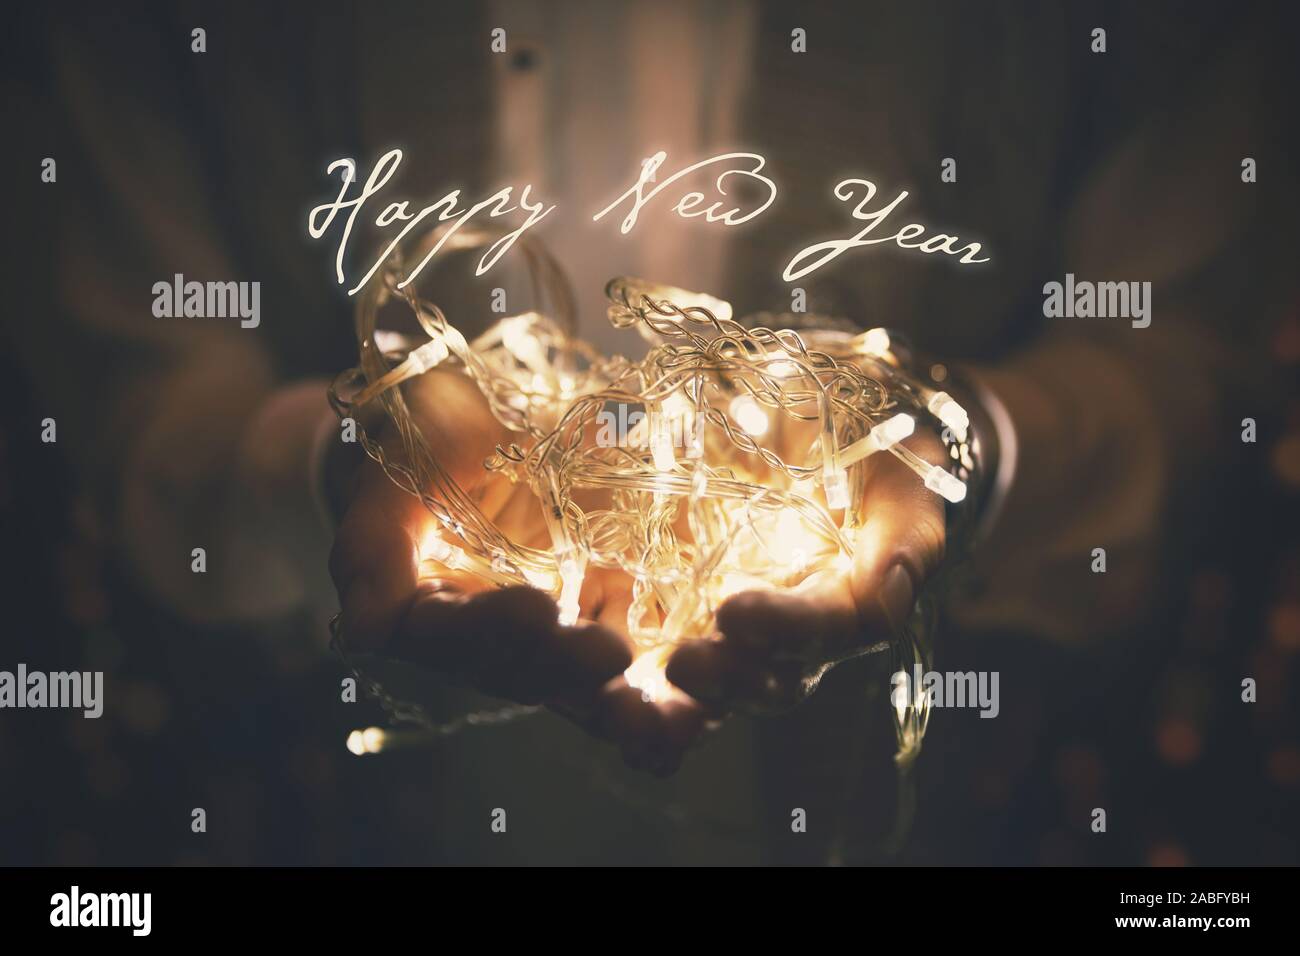 Feliz año nuevo - Tarjeta de felicitación guirnalda de luces LED que se iluminan en manos de mujer Foto de stock